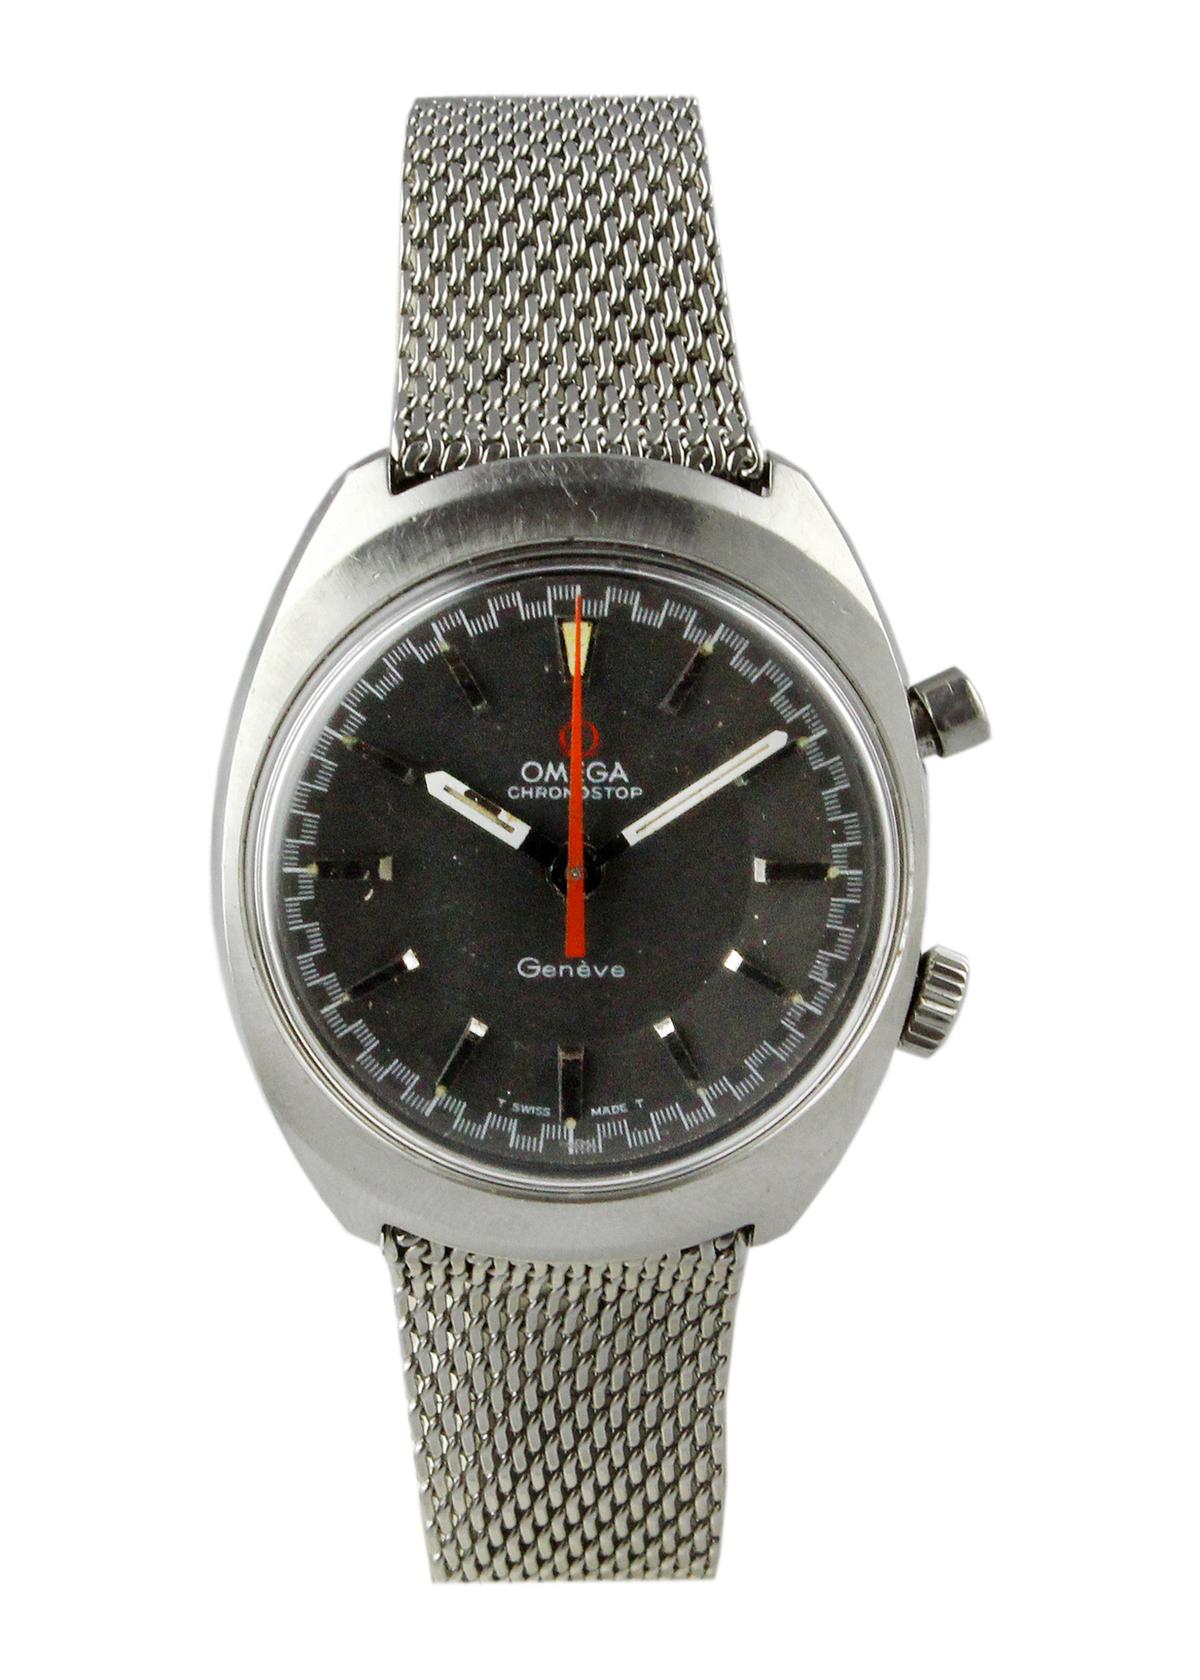 1969 Omega Chronostop Bracelet Watch